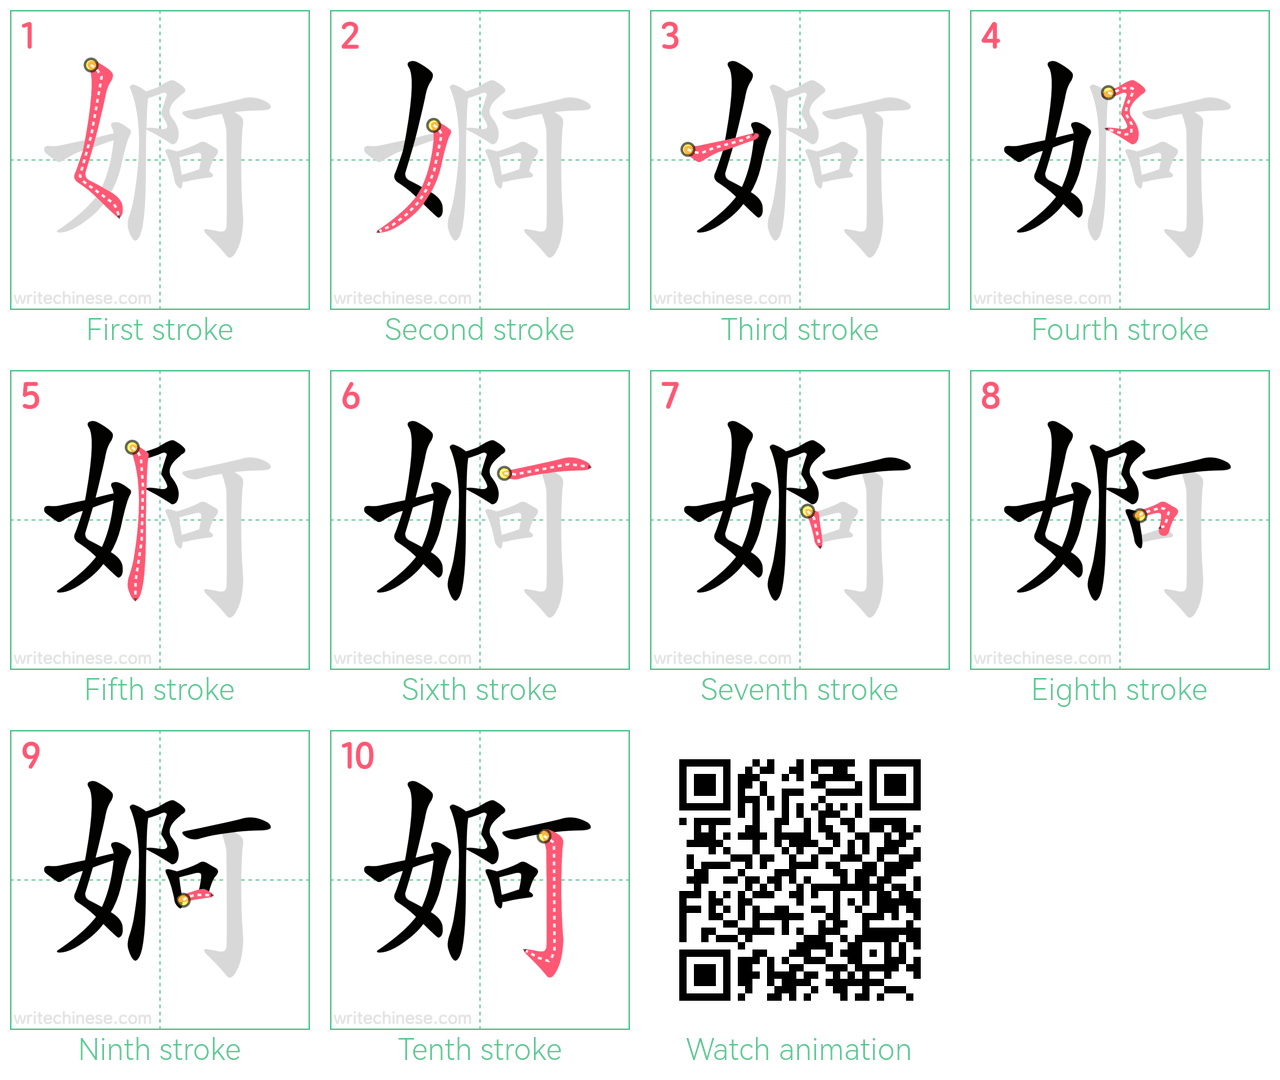 婀 step-by-step stroke order diagrams